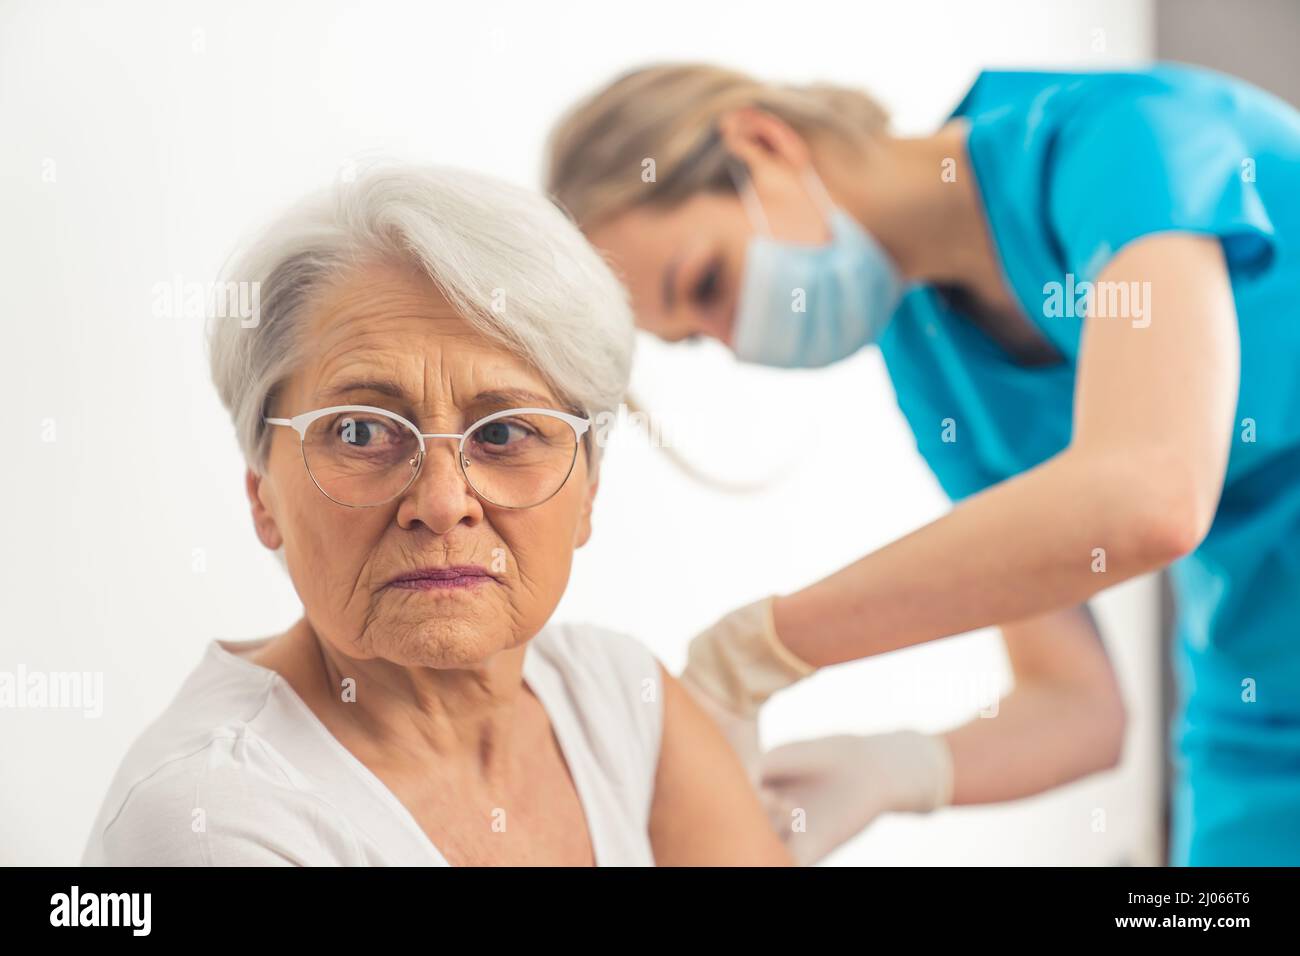 Donna caucasica anziana temuta di essere infetta, decide di vaccinarsi con l'aiuto di una giovane infermiera. Foto di alta qualità Foto Stock